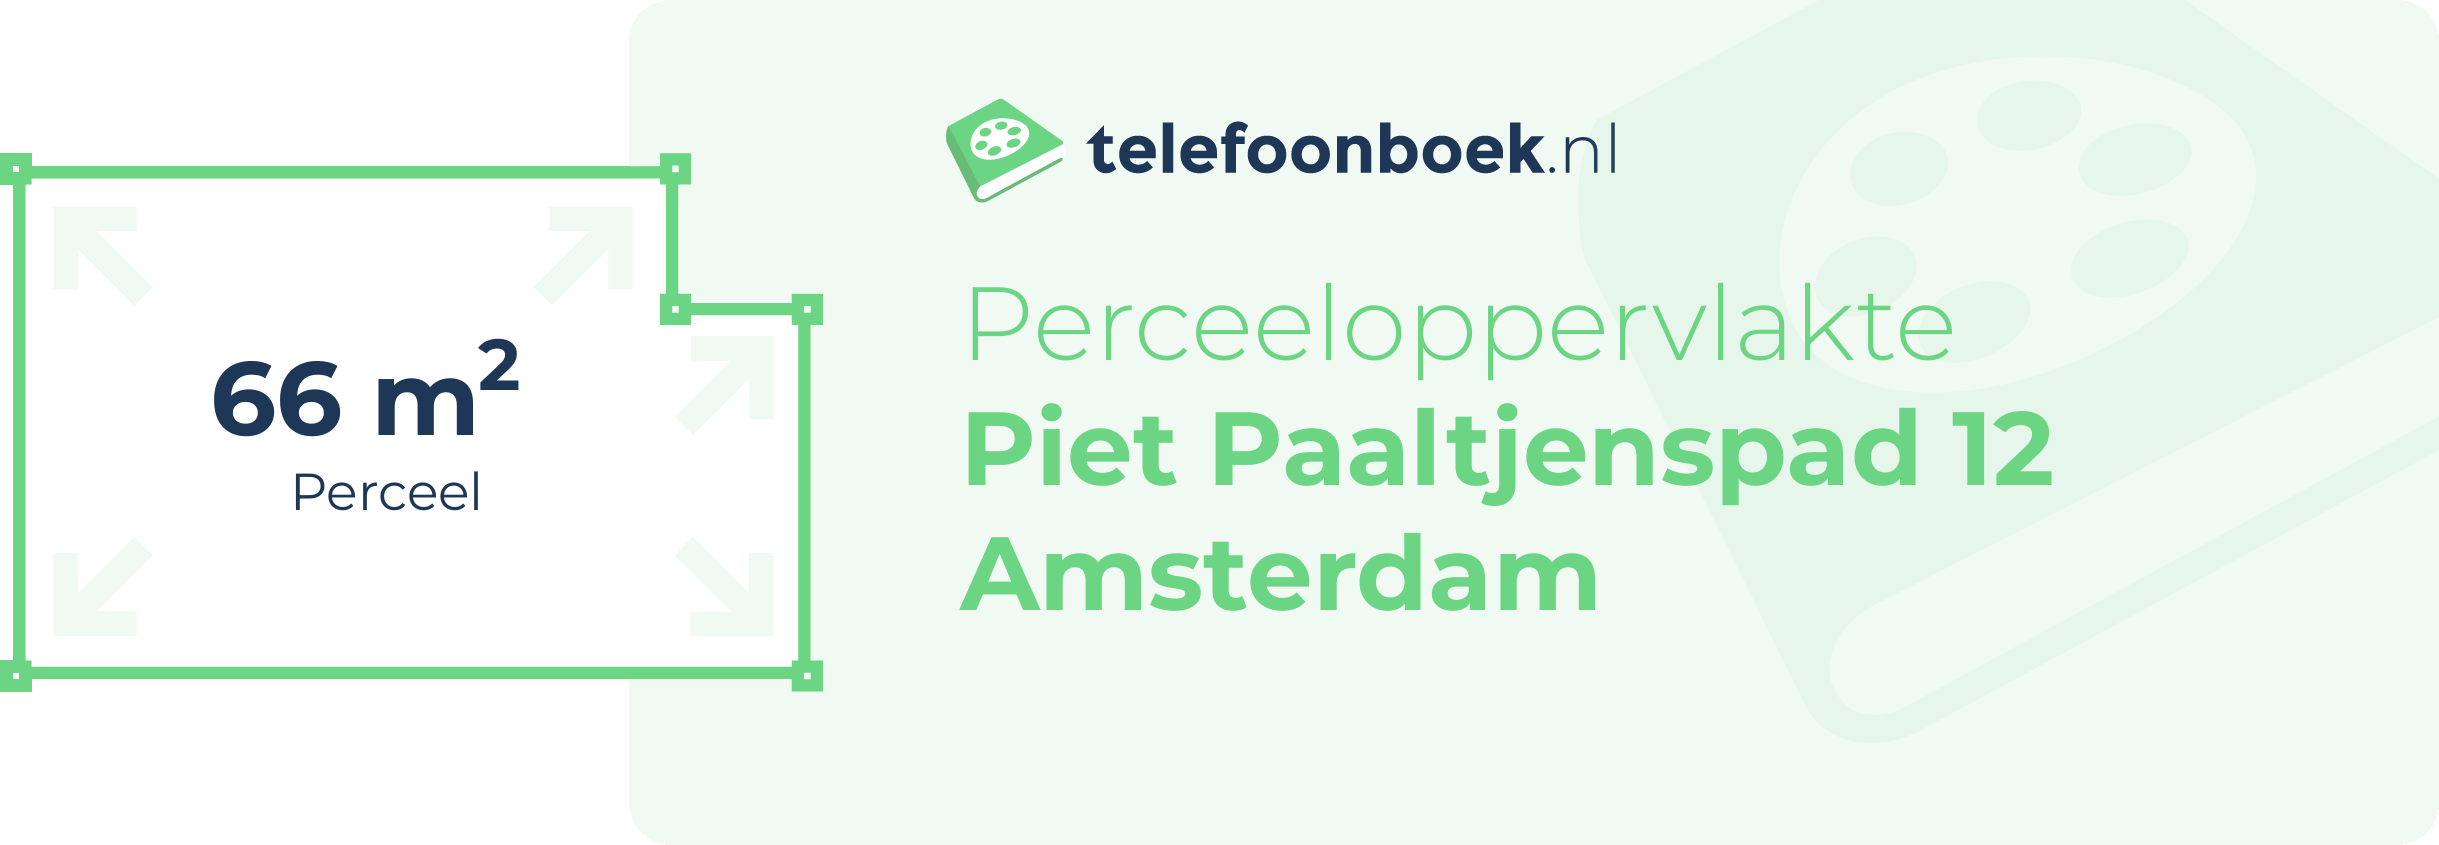 Perceeloppervlakte Piet Paaltjenspad 12 Amsterdam